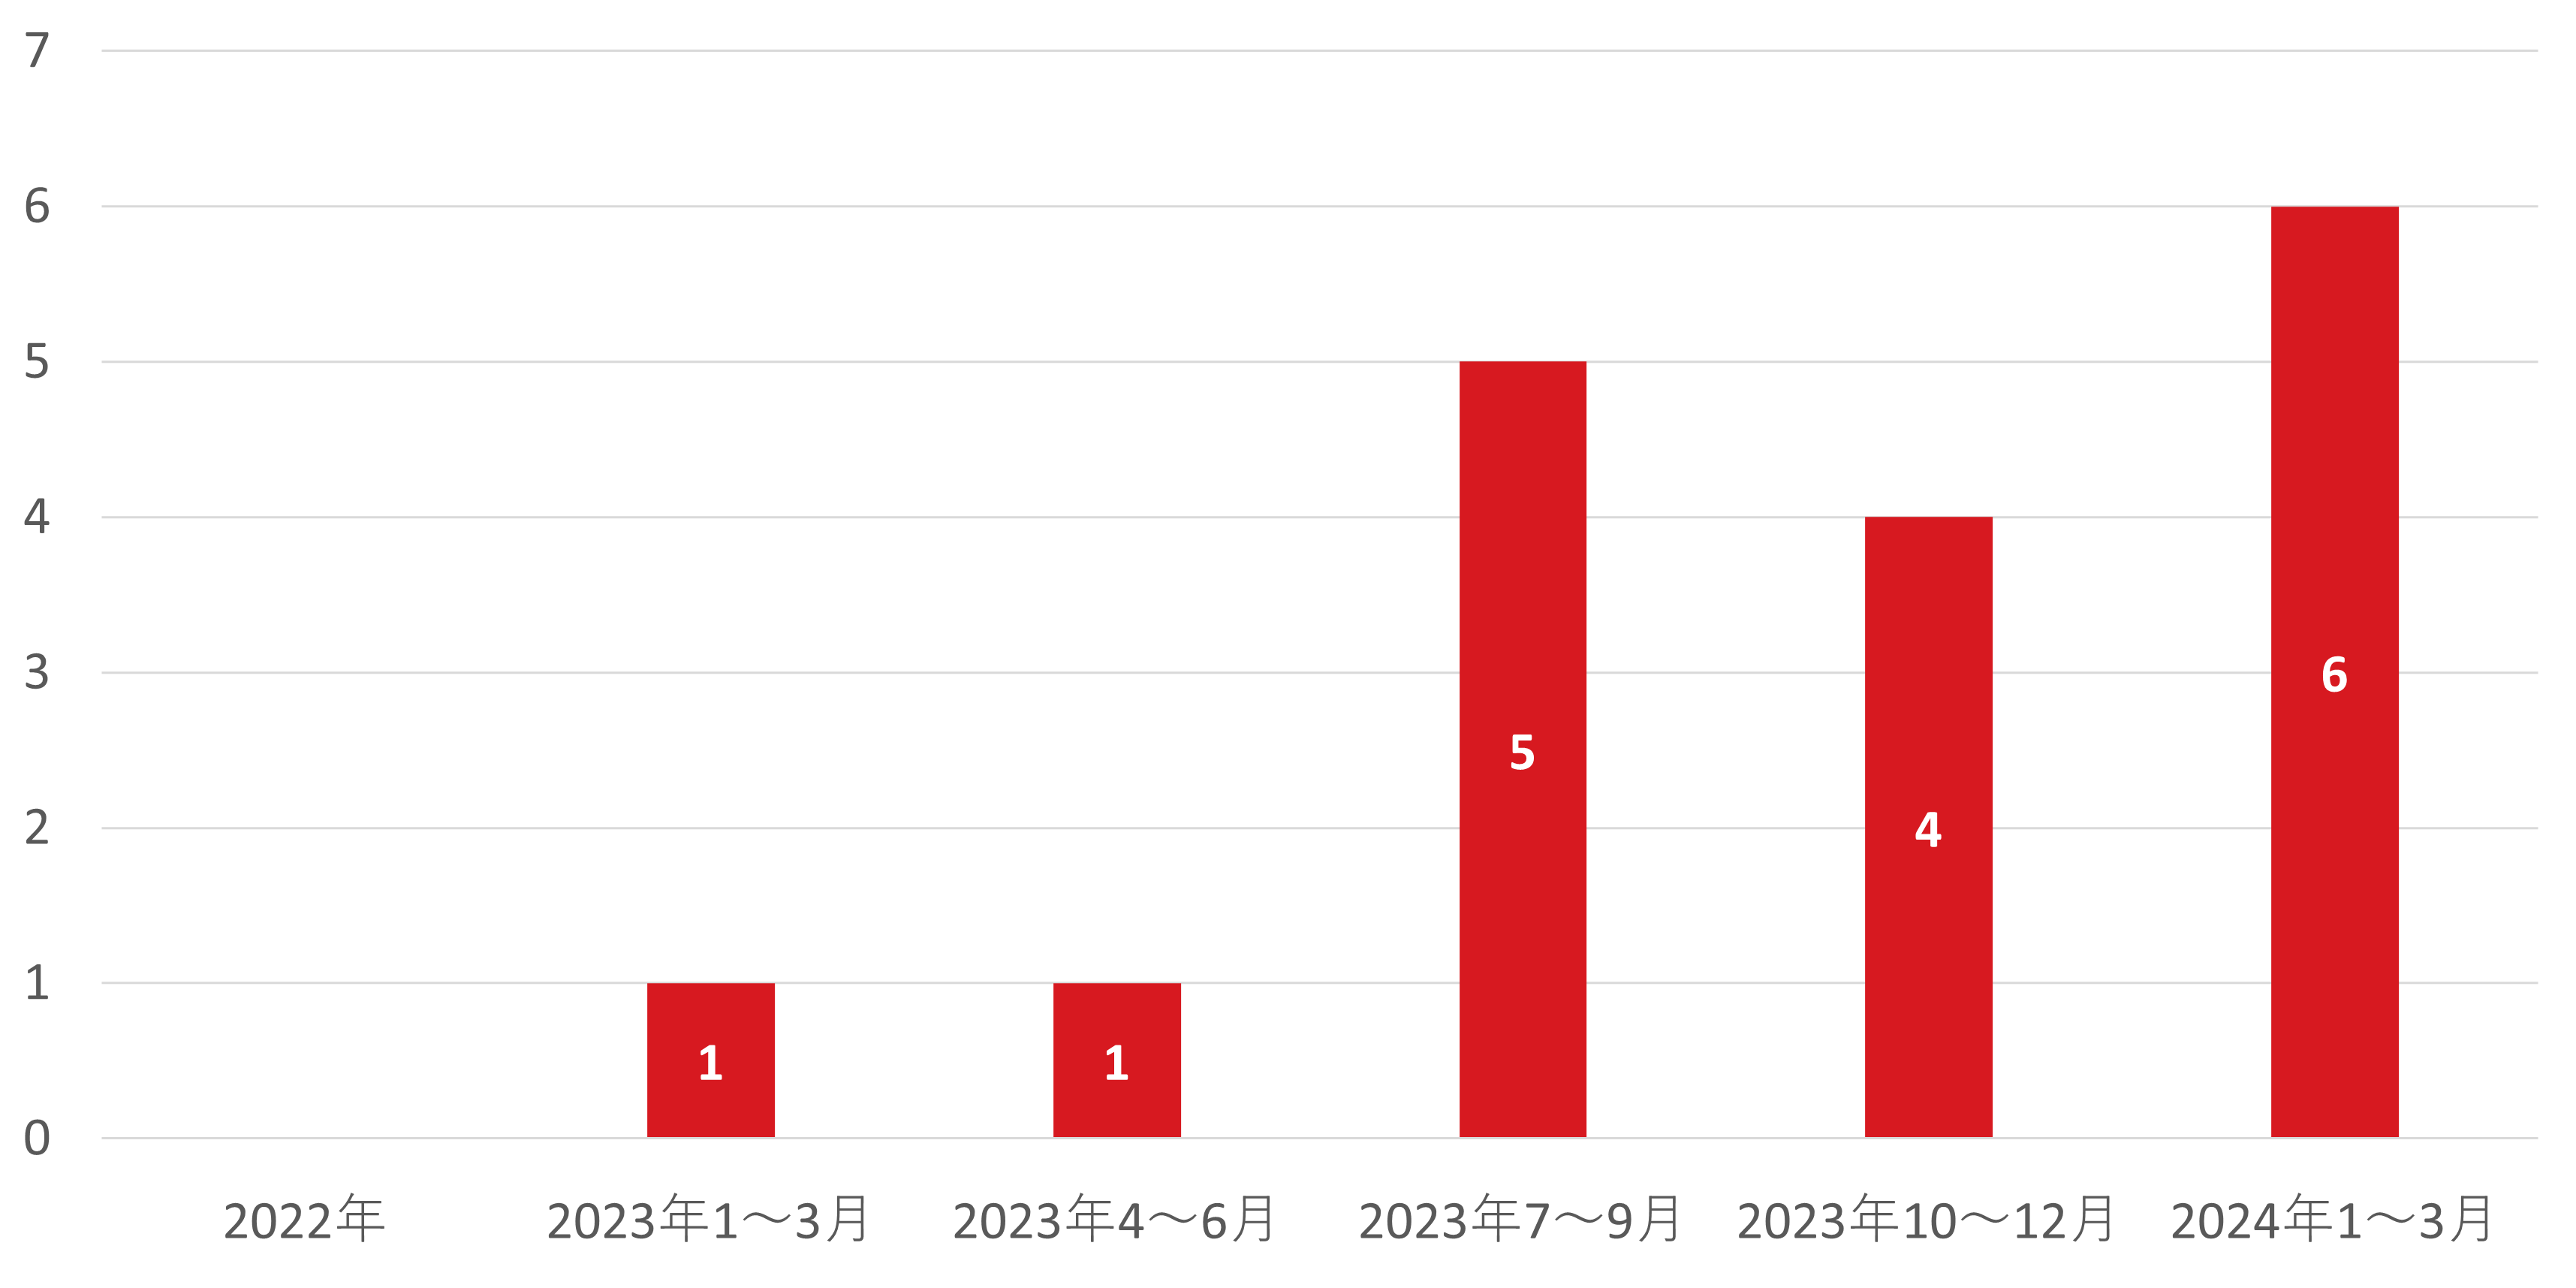 図：国内組織におけるサポート詐欺被害 公表件数の推移 2022年～2024年第1四半期